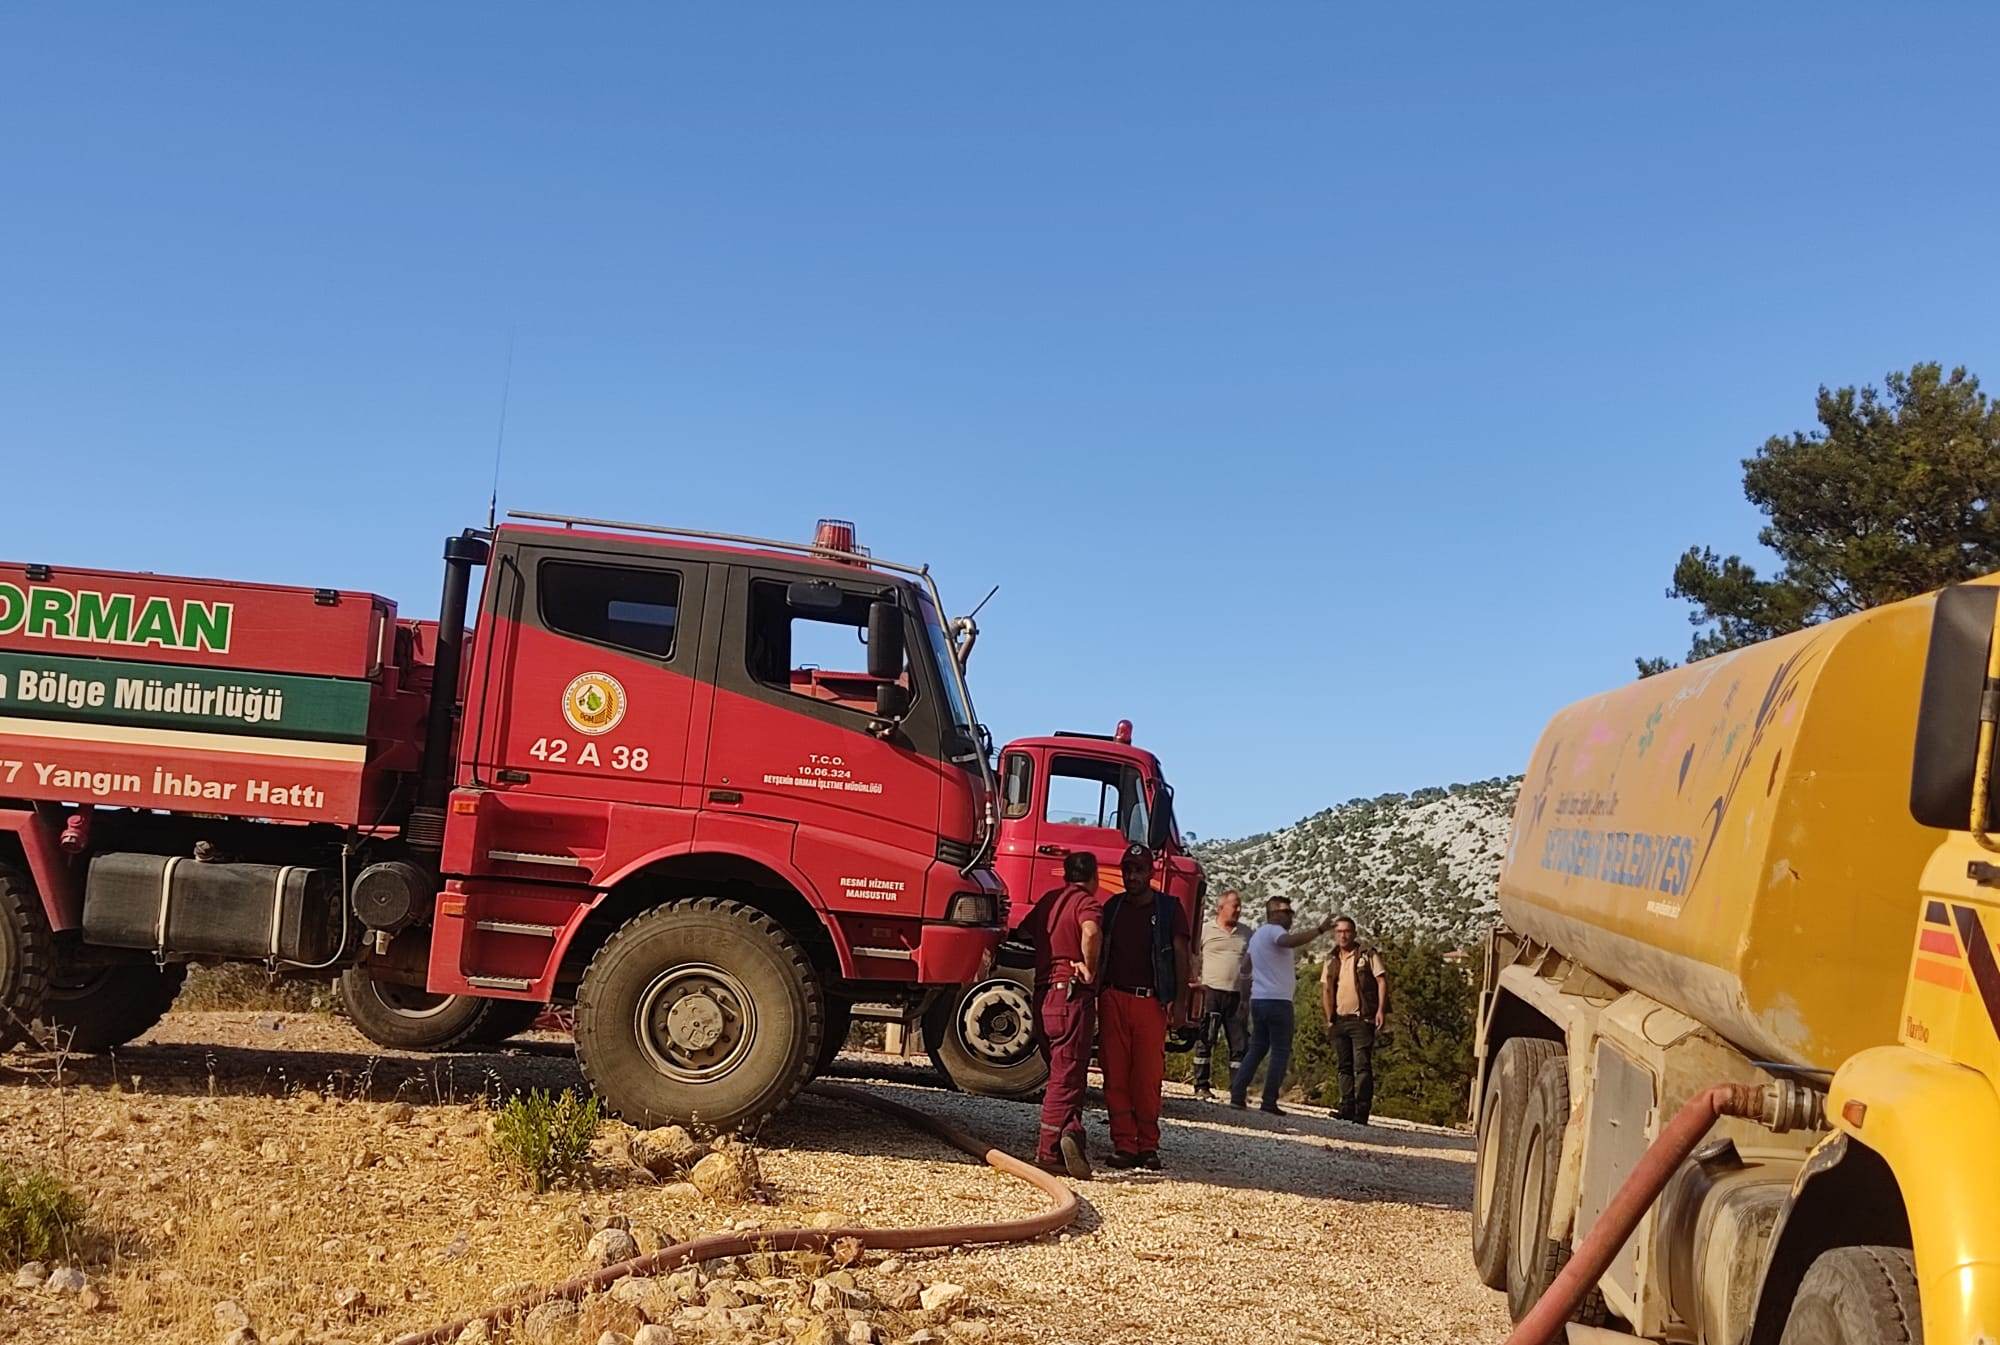  Seydişehir Belediyesi’nden Yangın Bölgesindeki Çalışmalara Destek